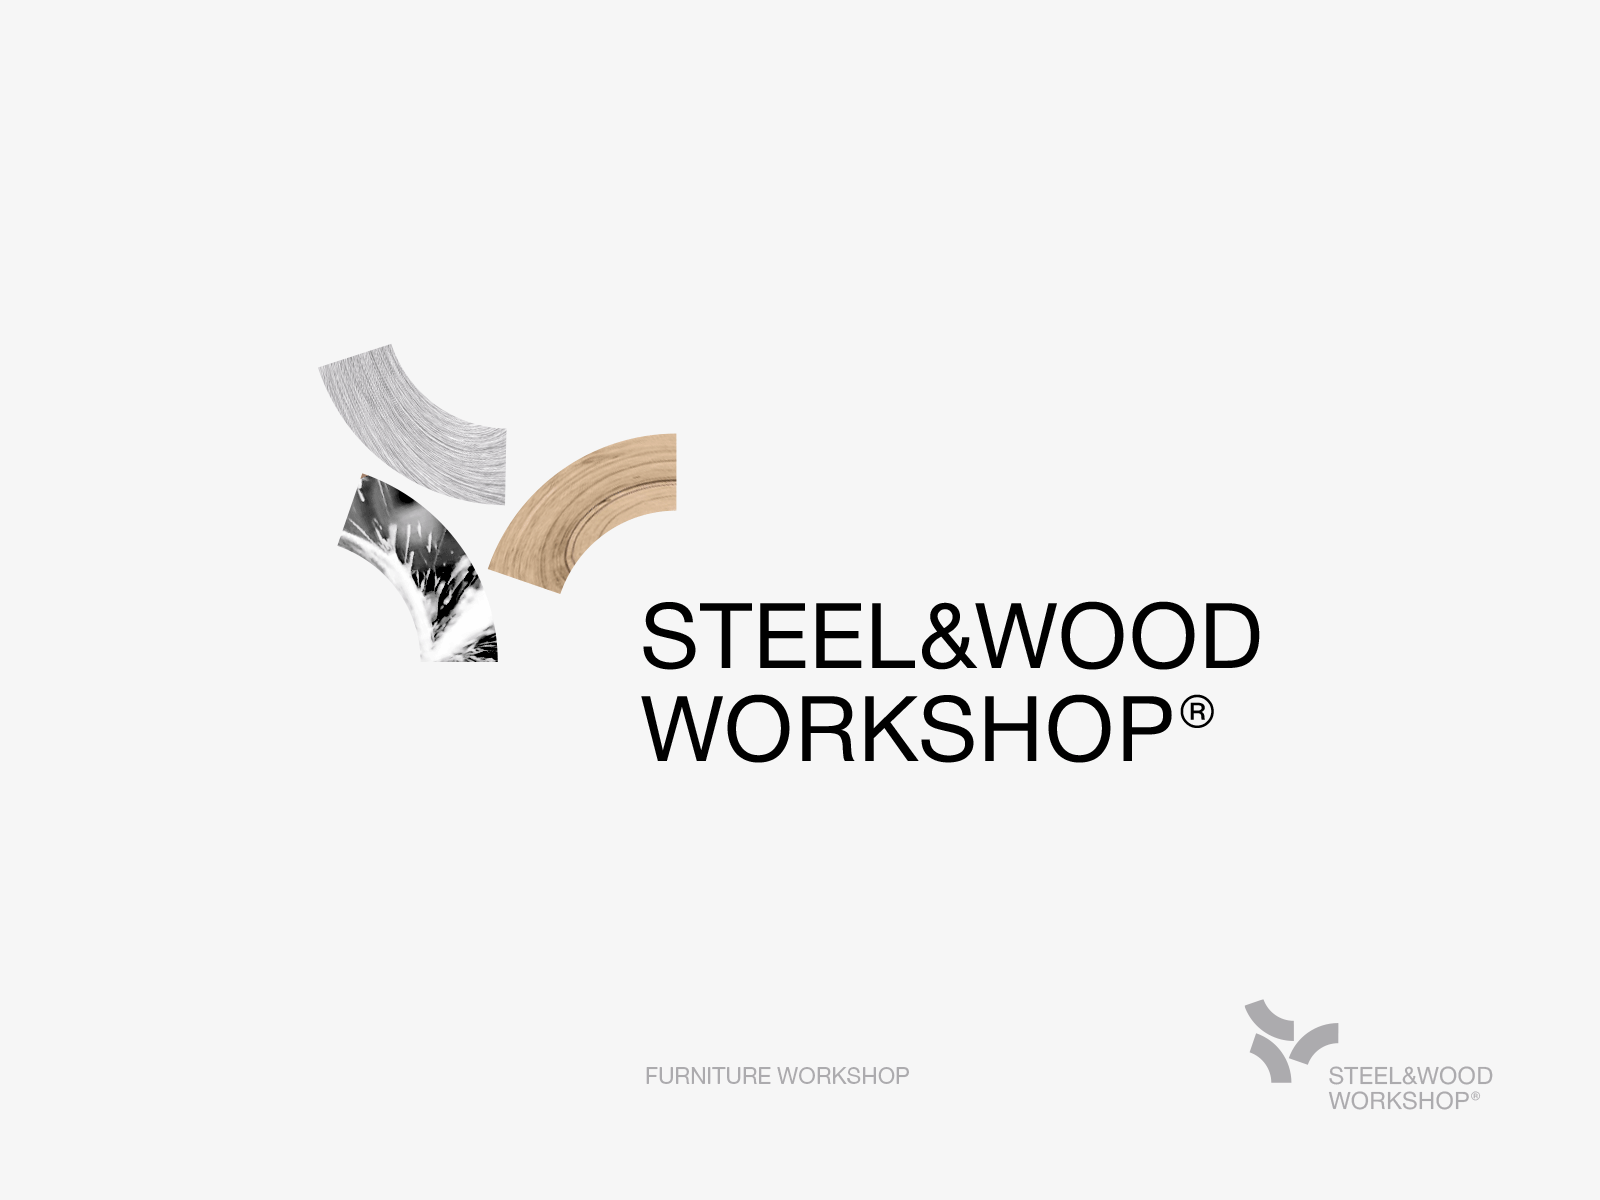 Steel&Wood Workshop